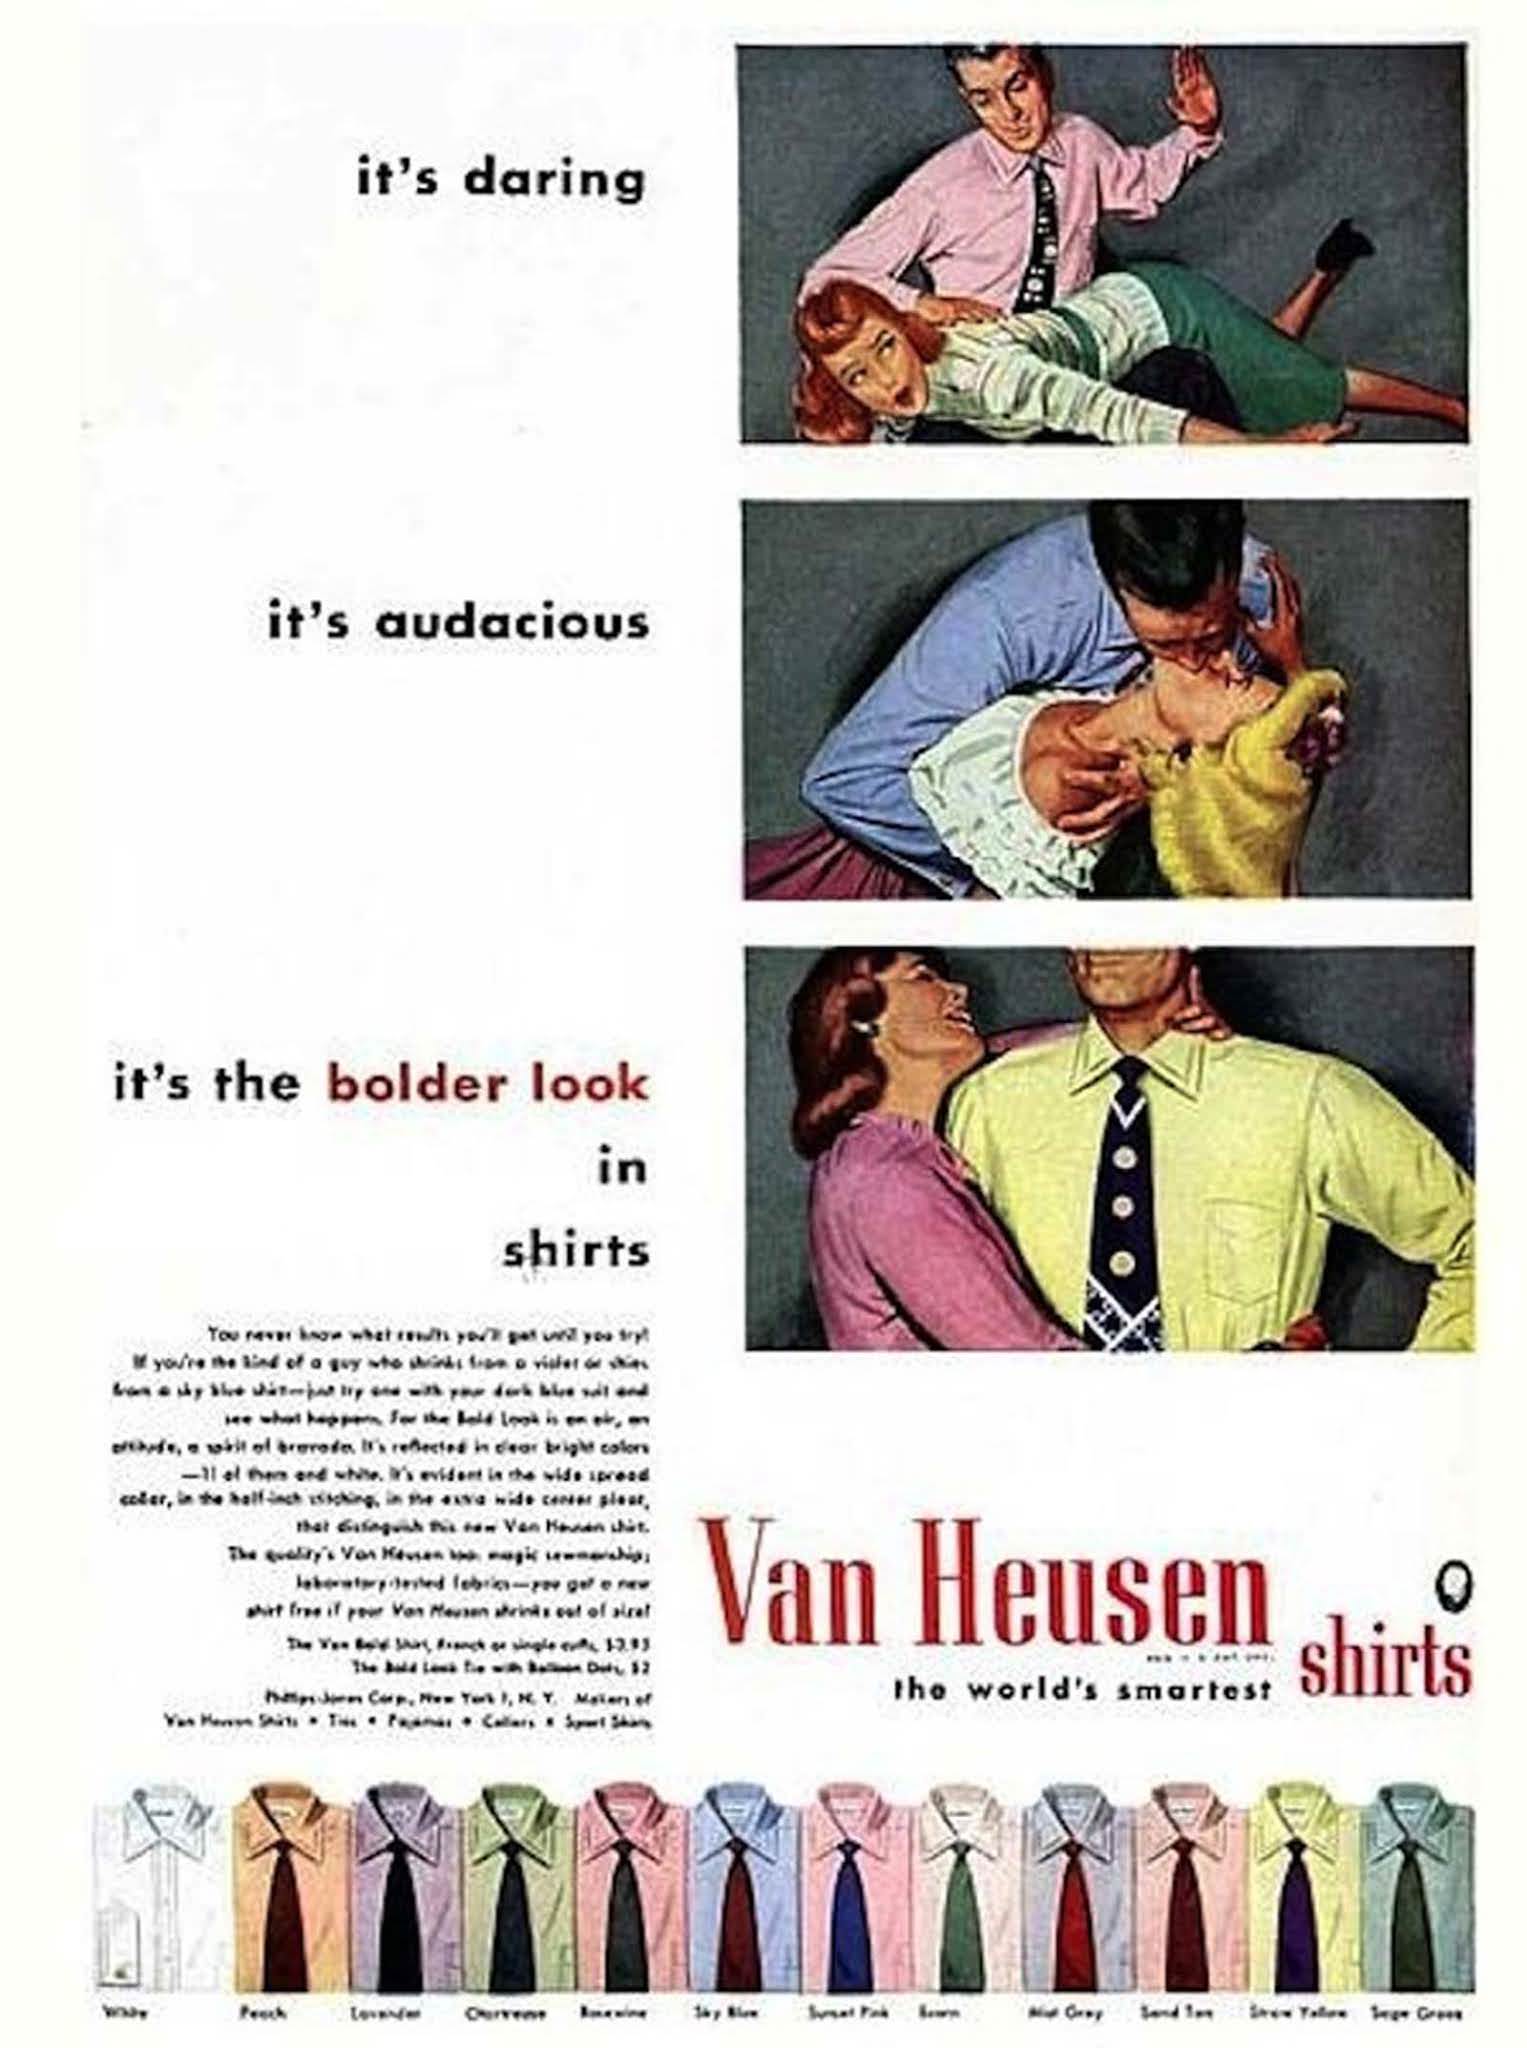 Van Heusen shirts.